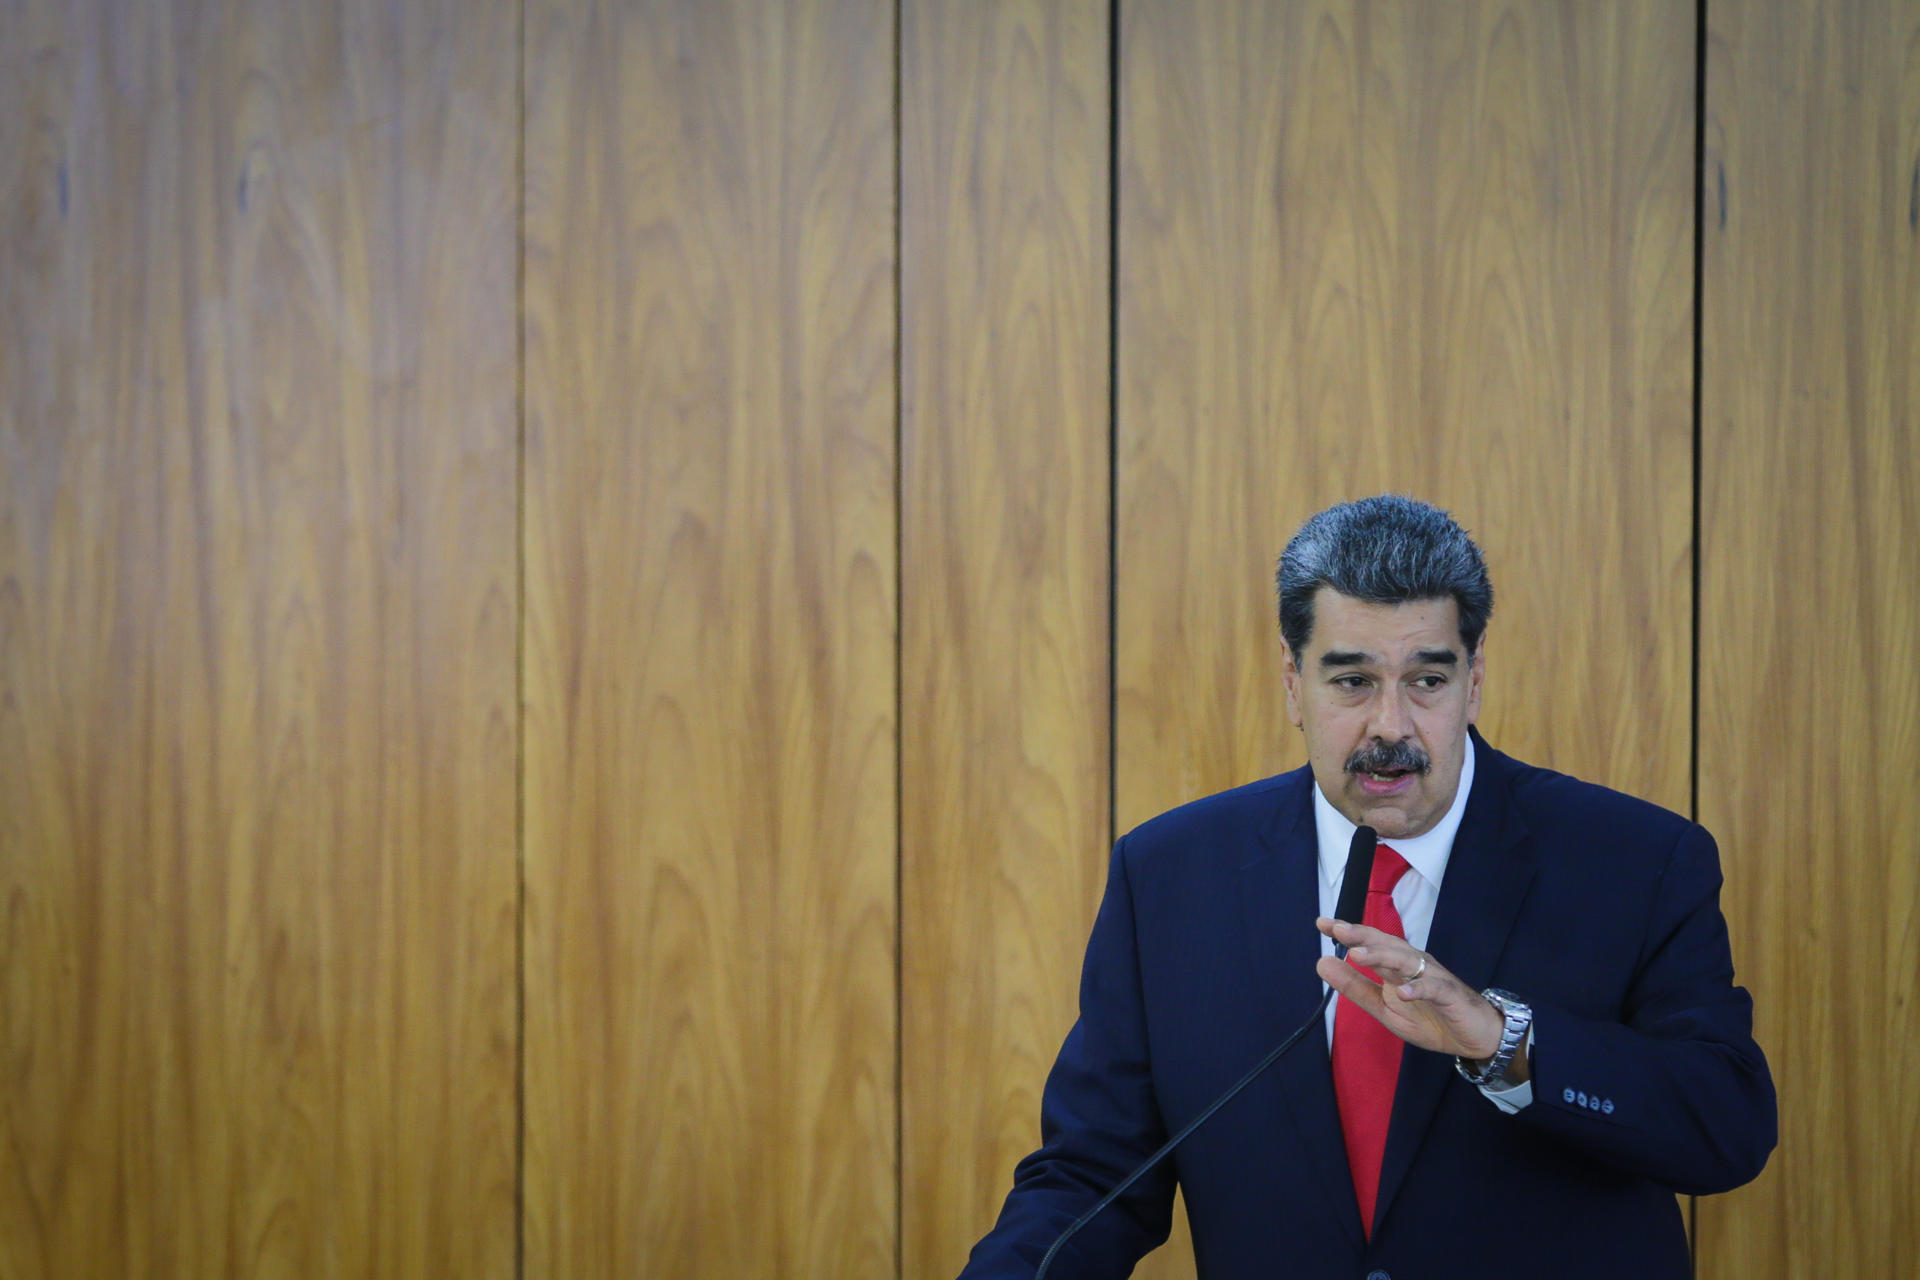 El presidente de Venezuela, Nicolás Maduro, en una fotografía de archivo. EFE/ André Coelho